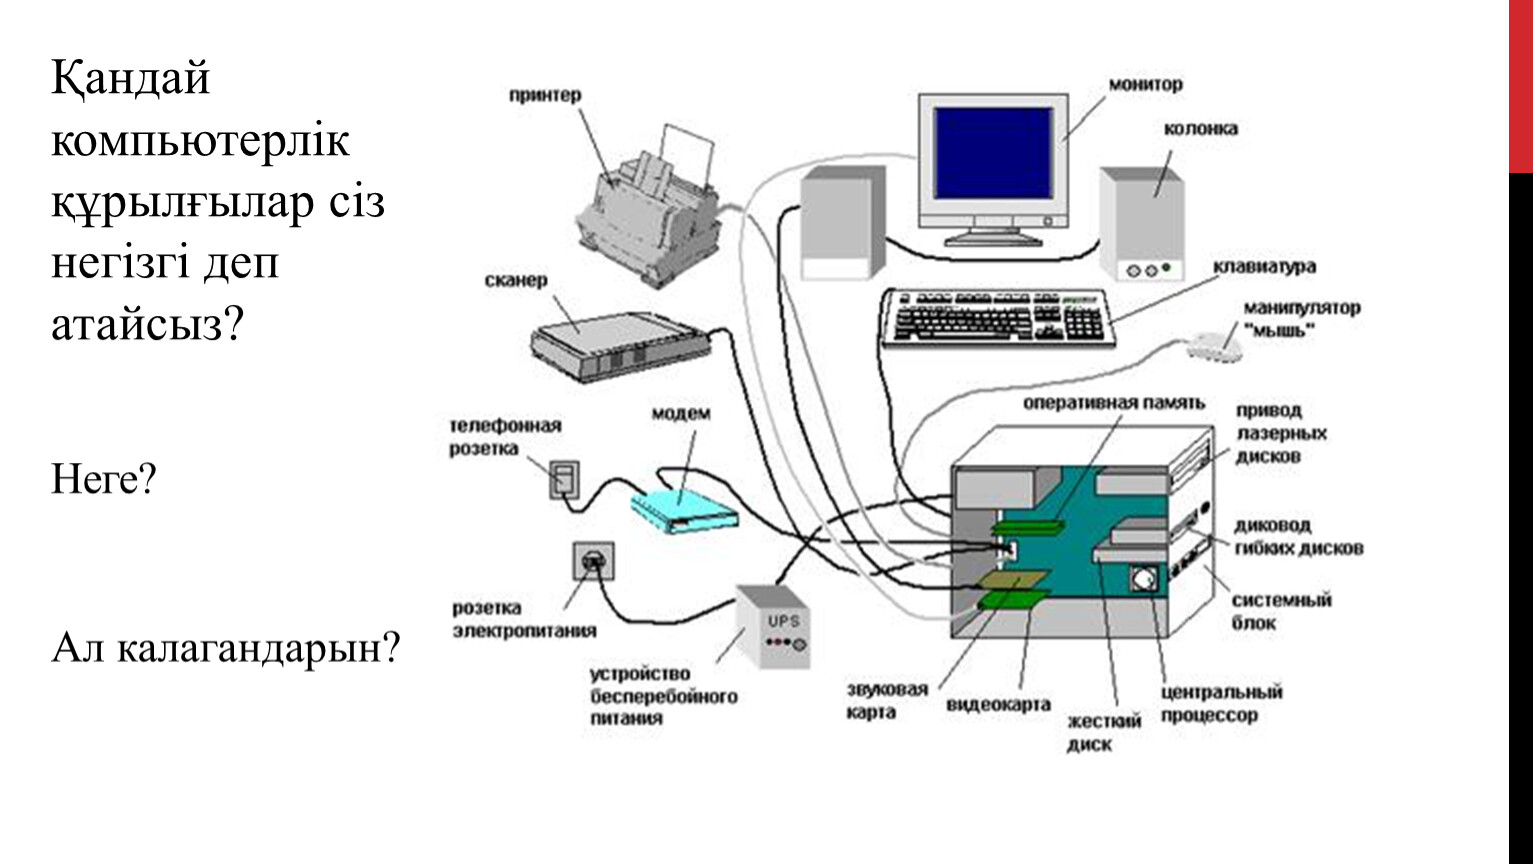 Схема соединения устройств компьютера